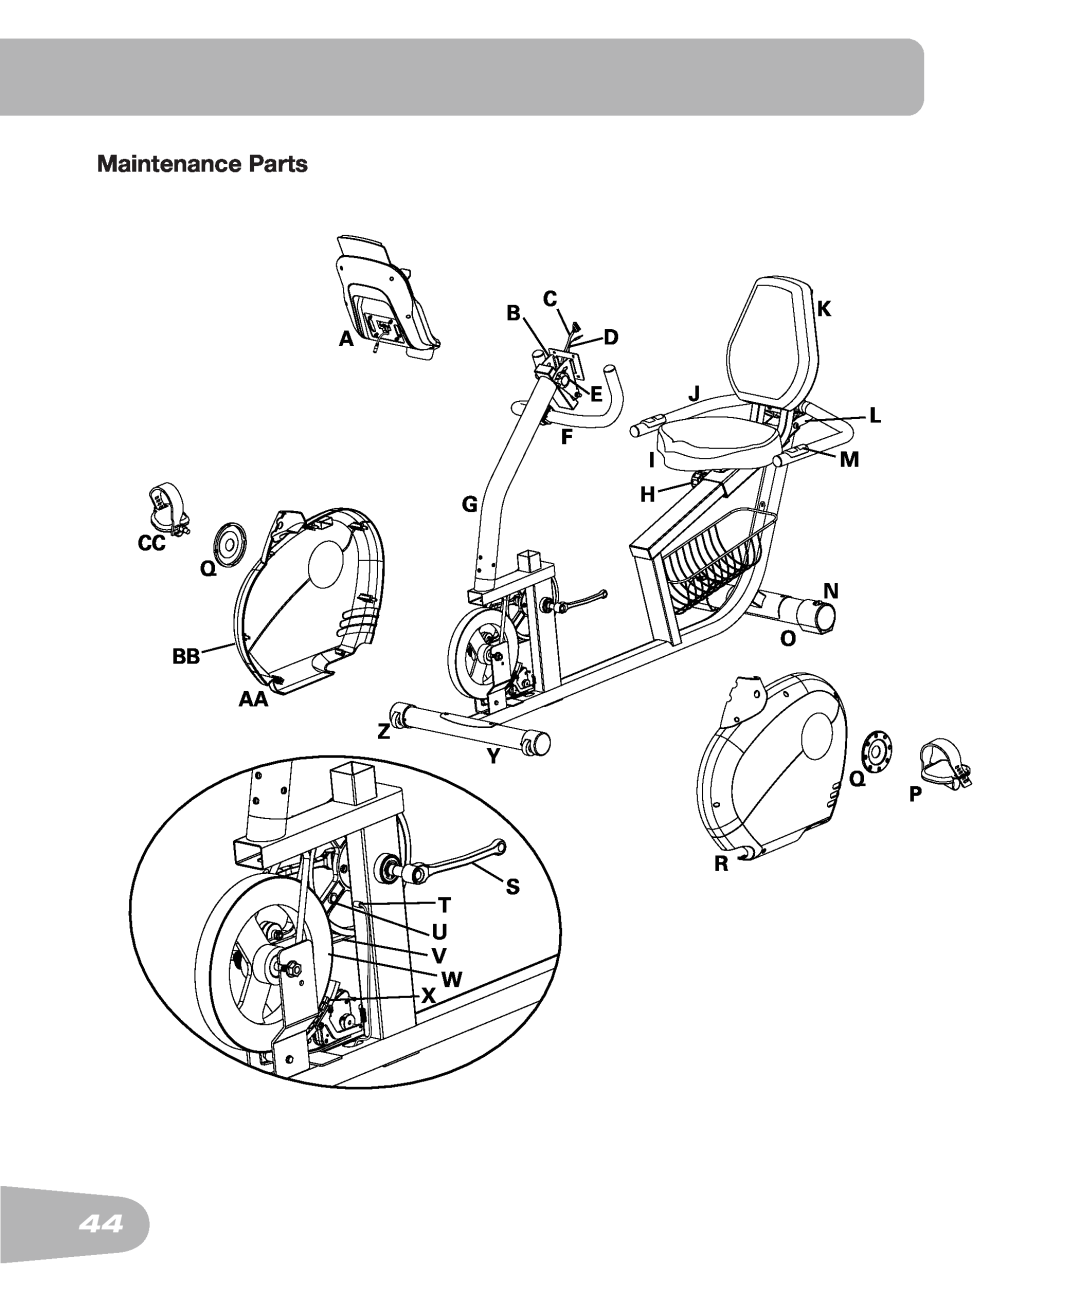 Schwinn 250 schwinn manual Maintenance Parts 